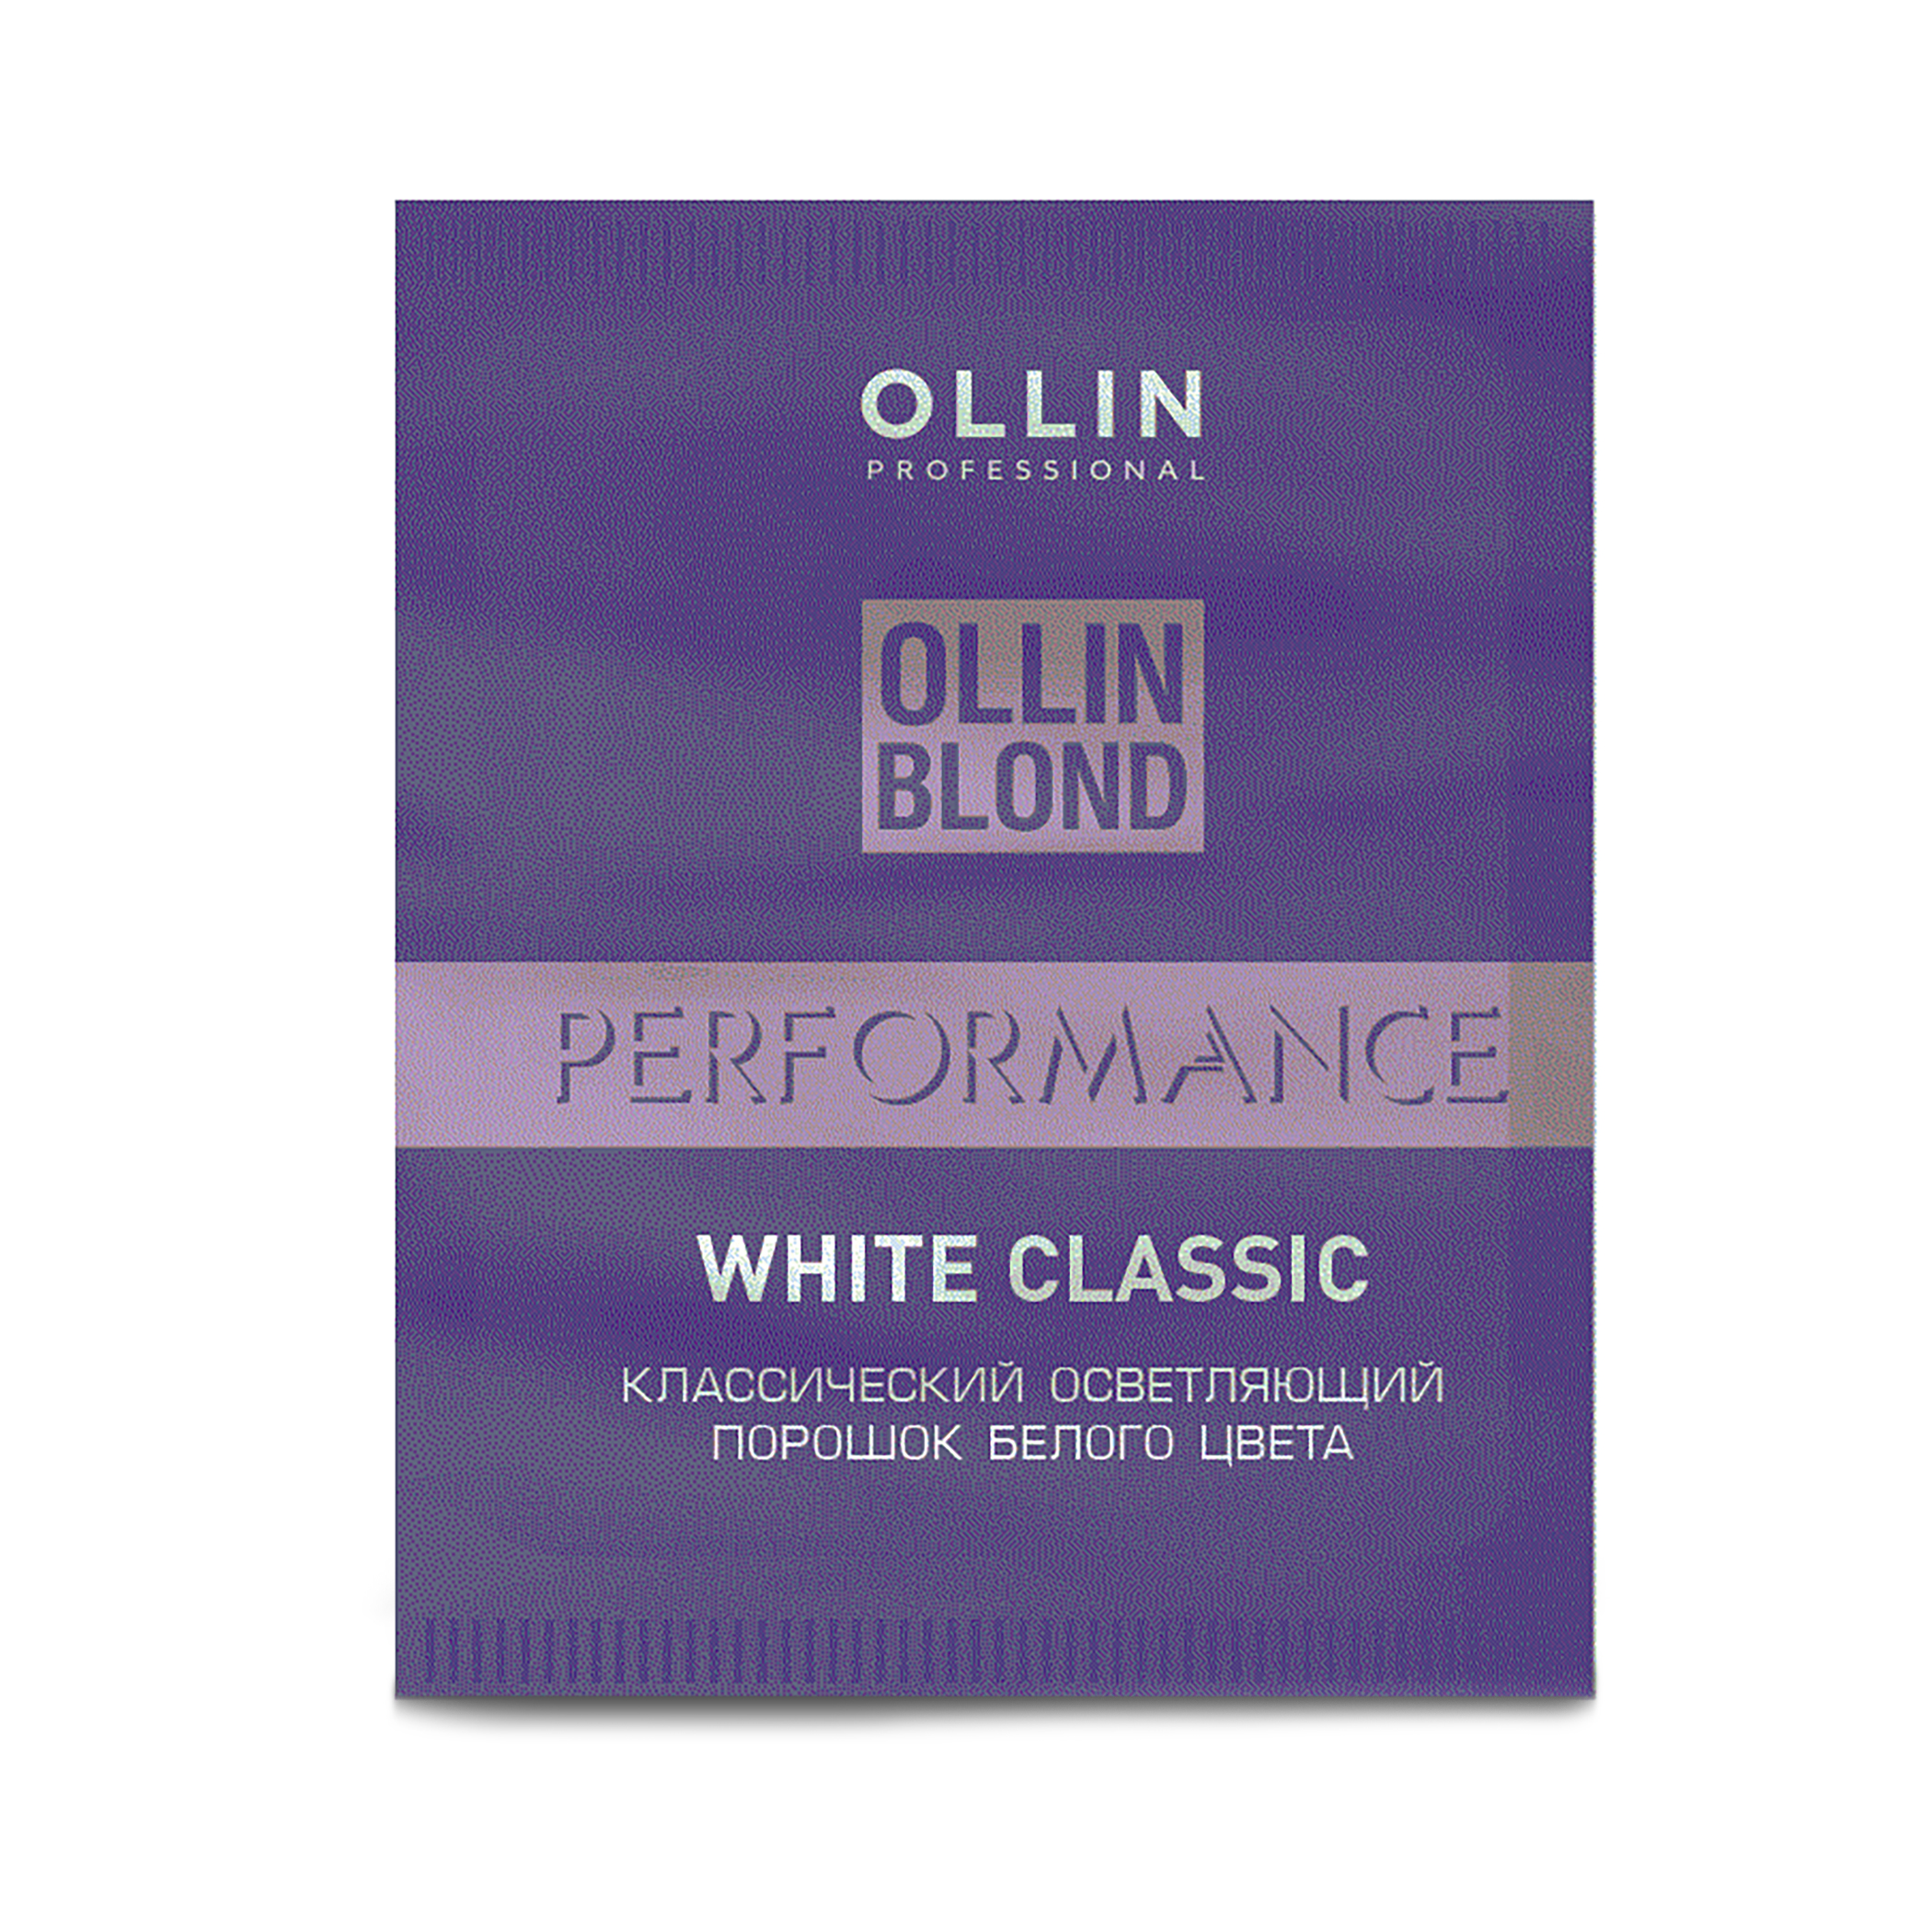 Осветляющий порошок ollin. Порошоколлин порфомкнс. Ollin professional blond Performance White Classic. Олин порошок осветляющий. Пудра для обесцвечивания волос Оллин.